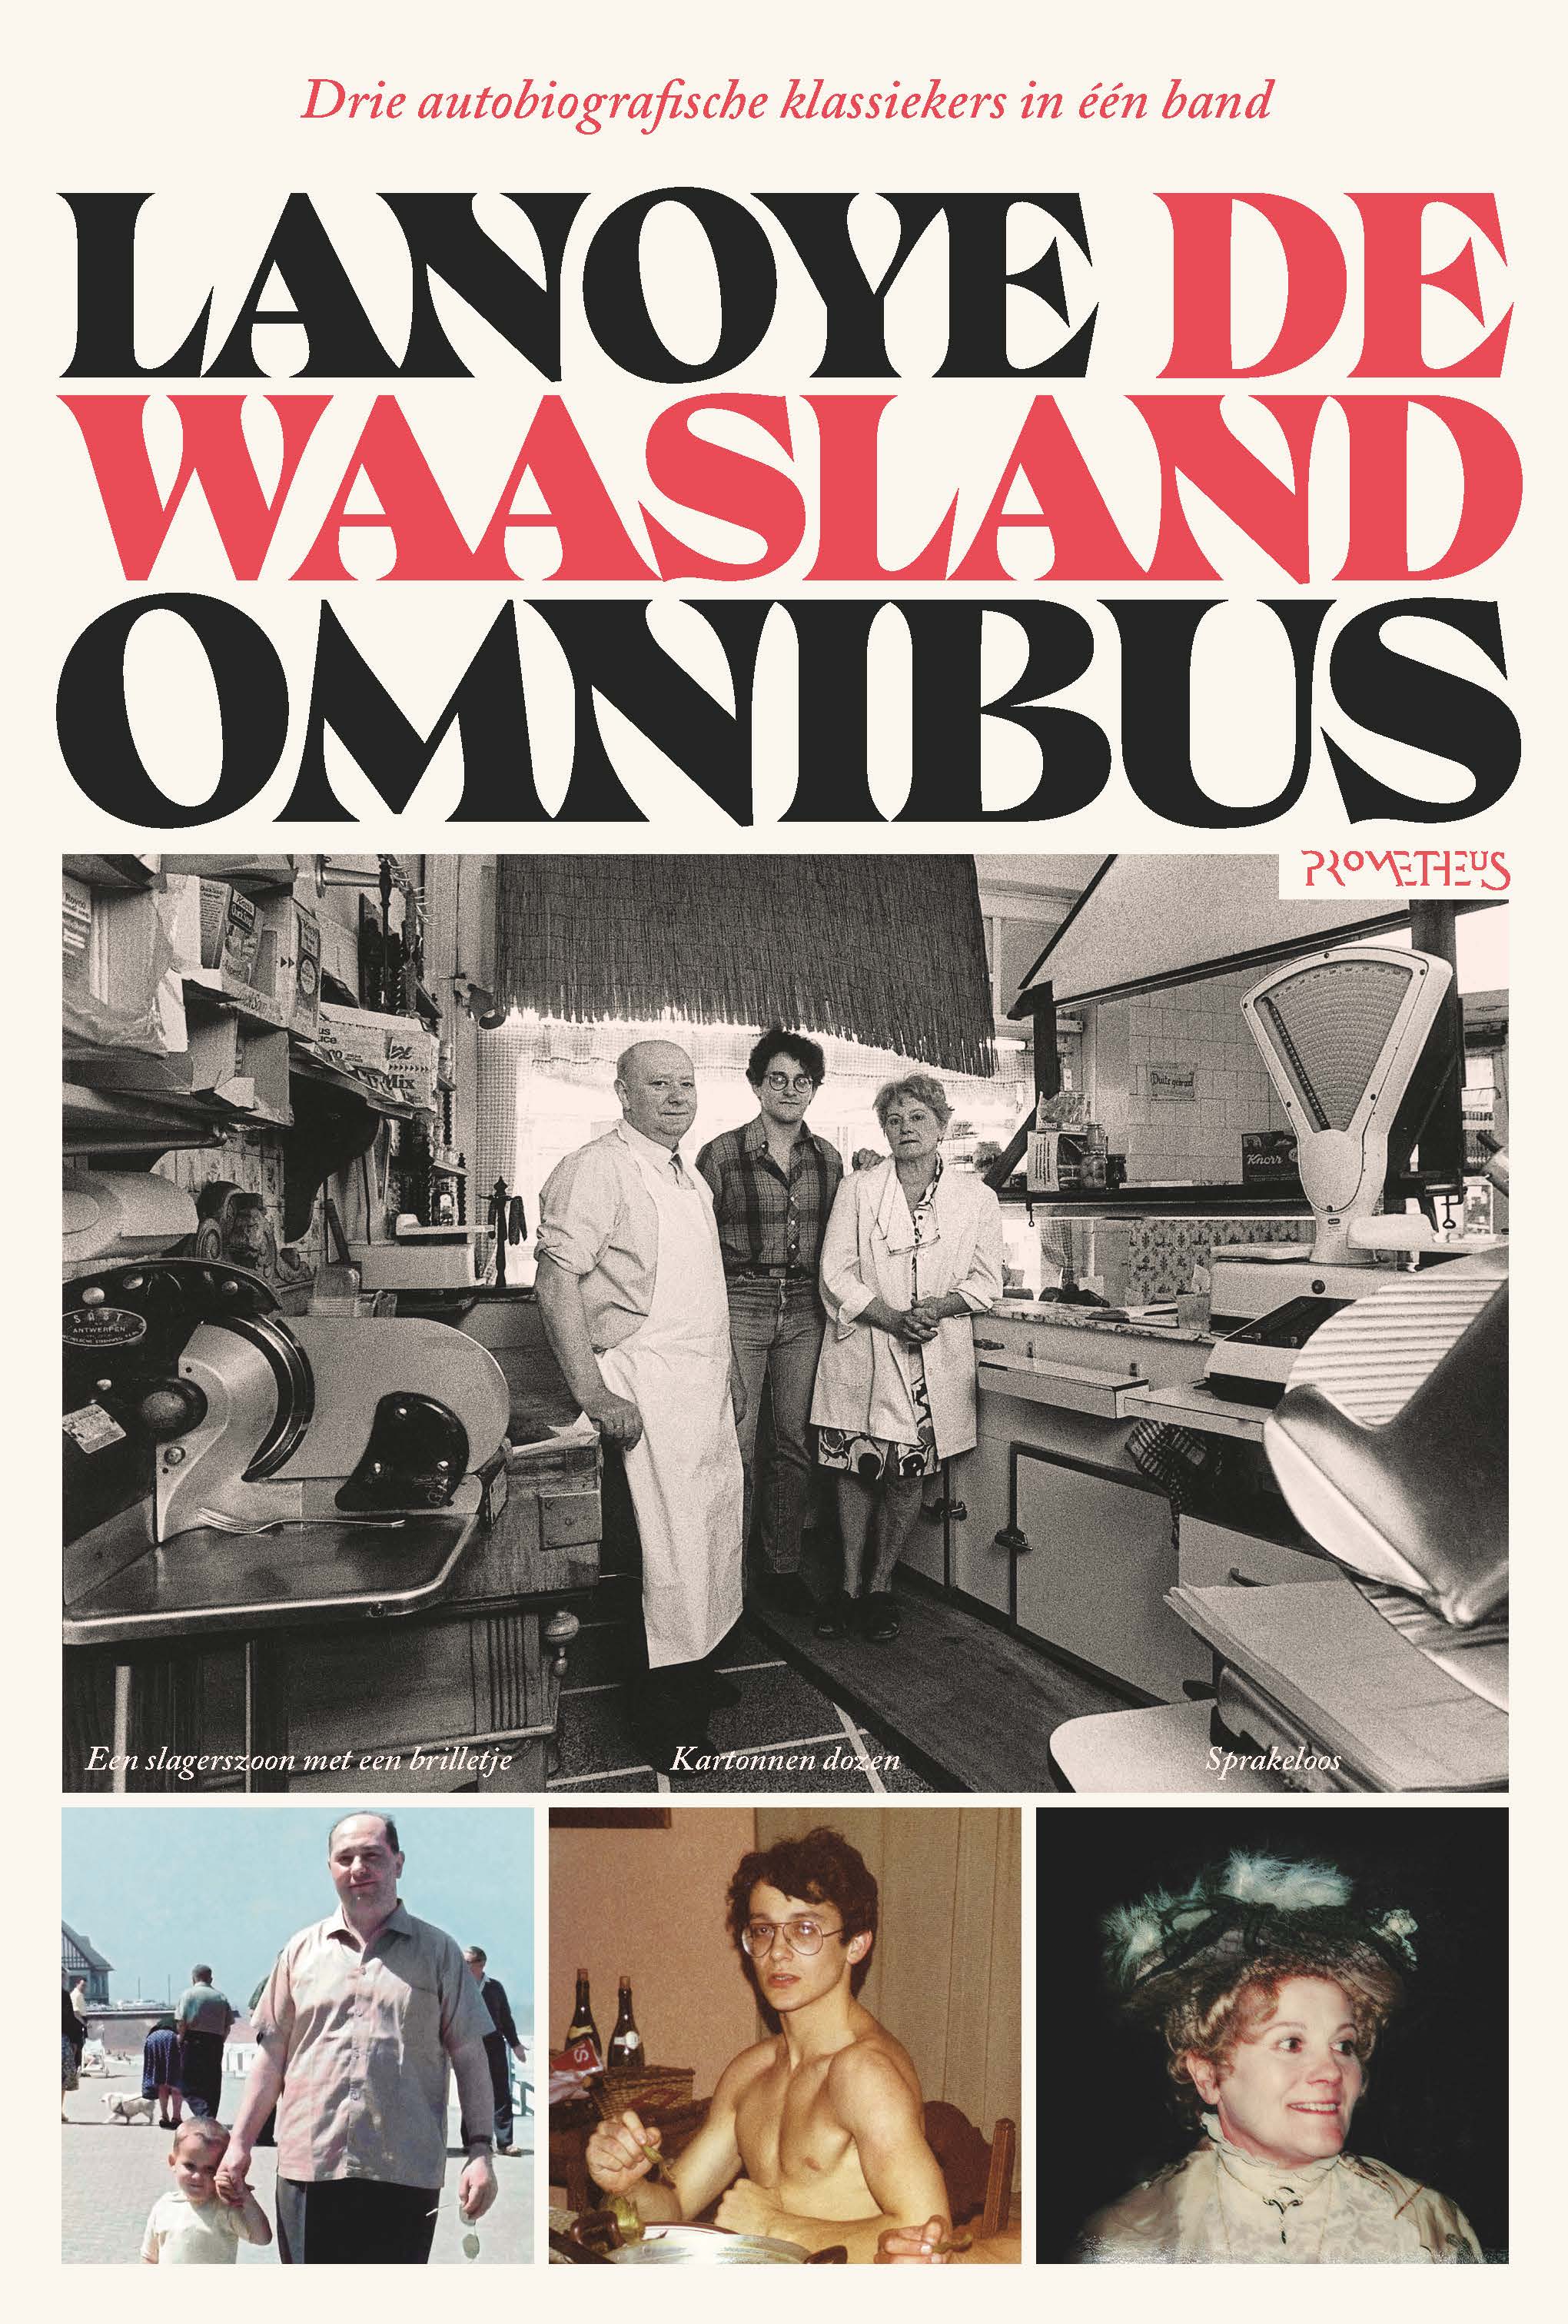 Waasland-omnibus